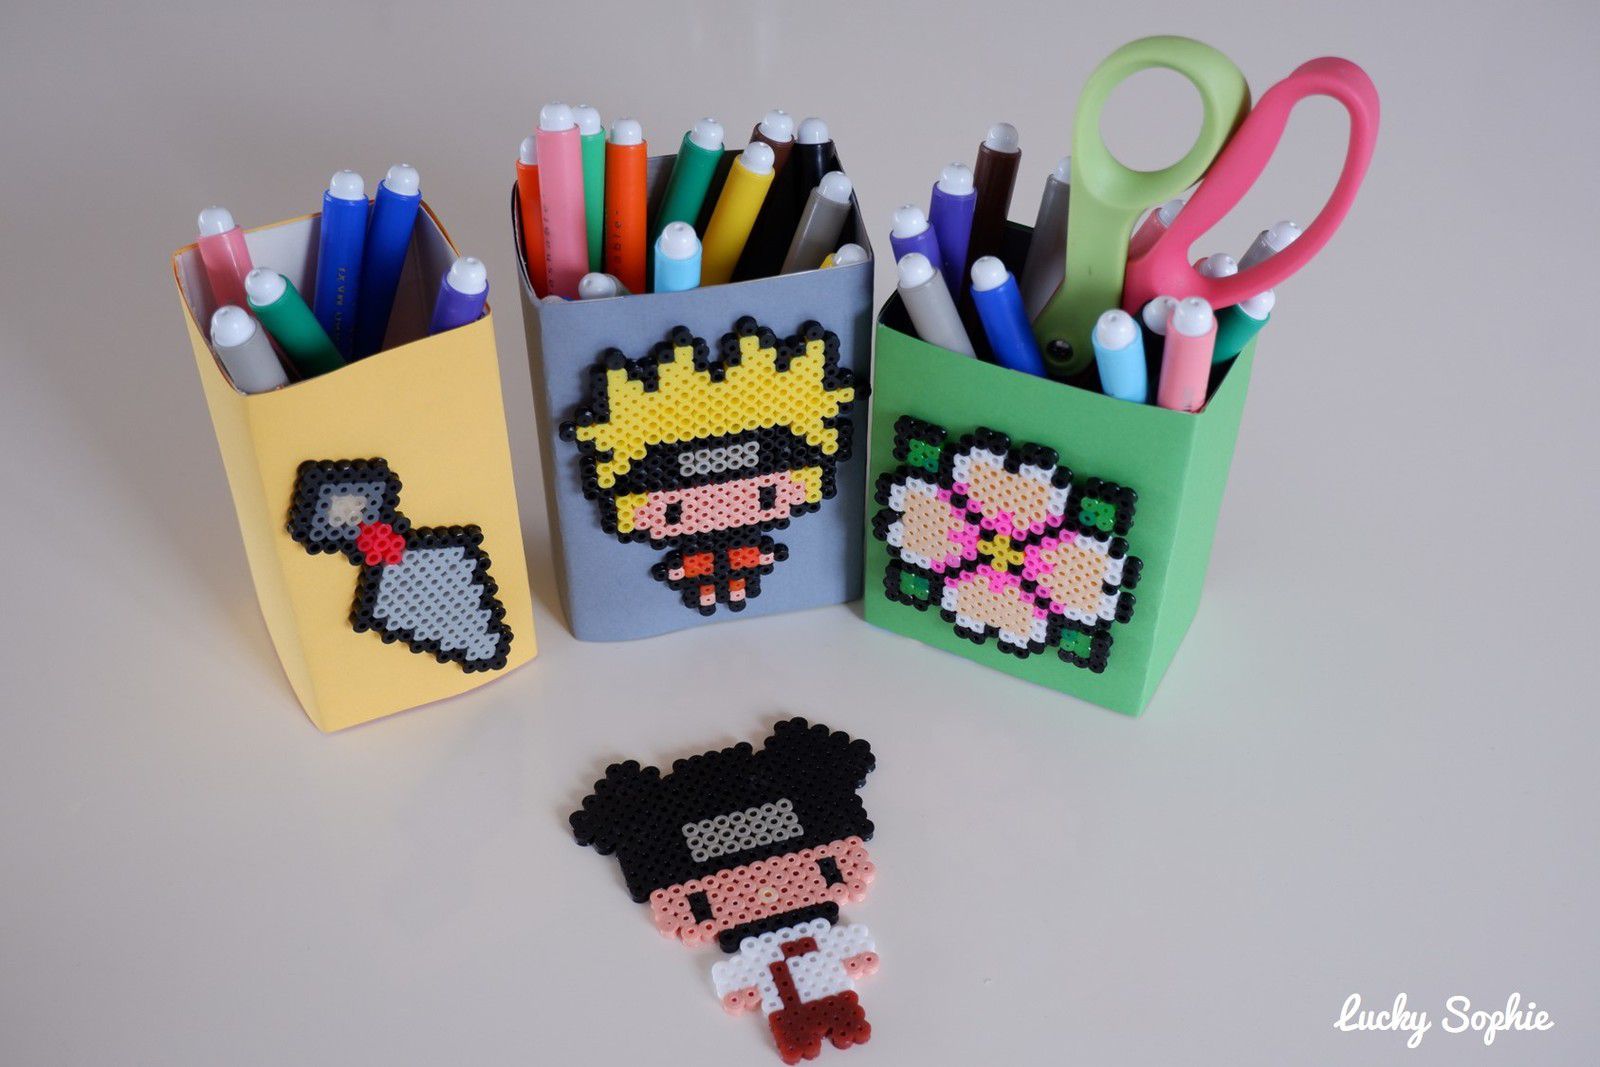 Pots à crayon Naruto en perles à repasser - Lucky Sophie blog famille voyage